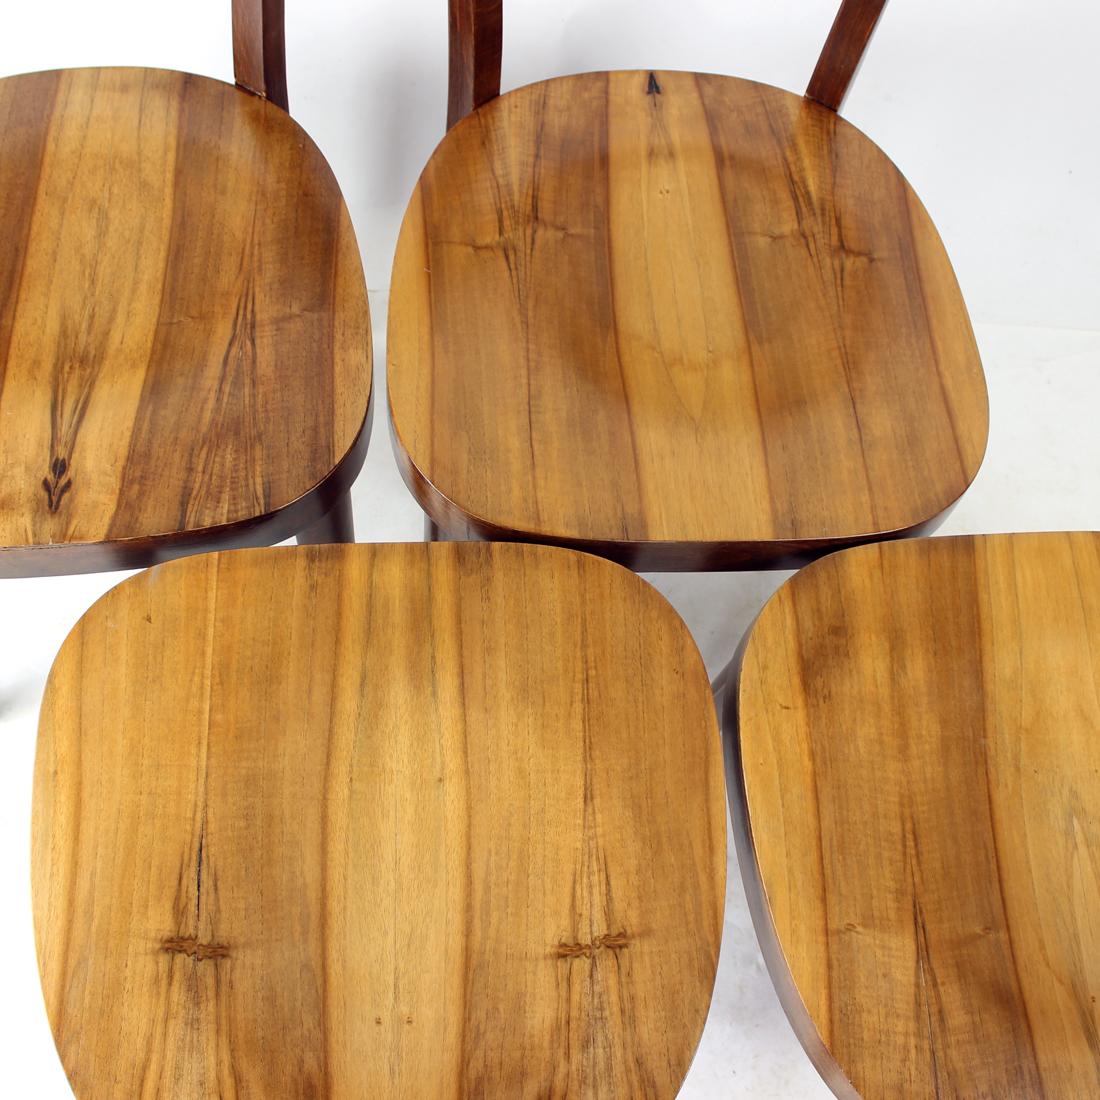 Magnifique ensemble de quatre chaises en bois produites en Tchécoslovaquie par la société Tatra dans les années 1950. Les chaises sont fabriquées en bois de chêne avec une assise et un dossier en placage de noyer. La beauté de la structure et du